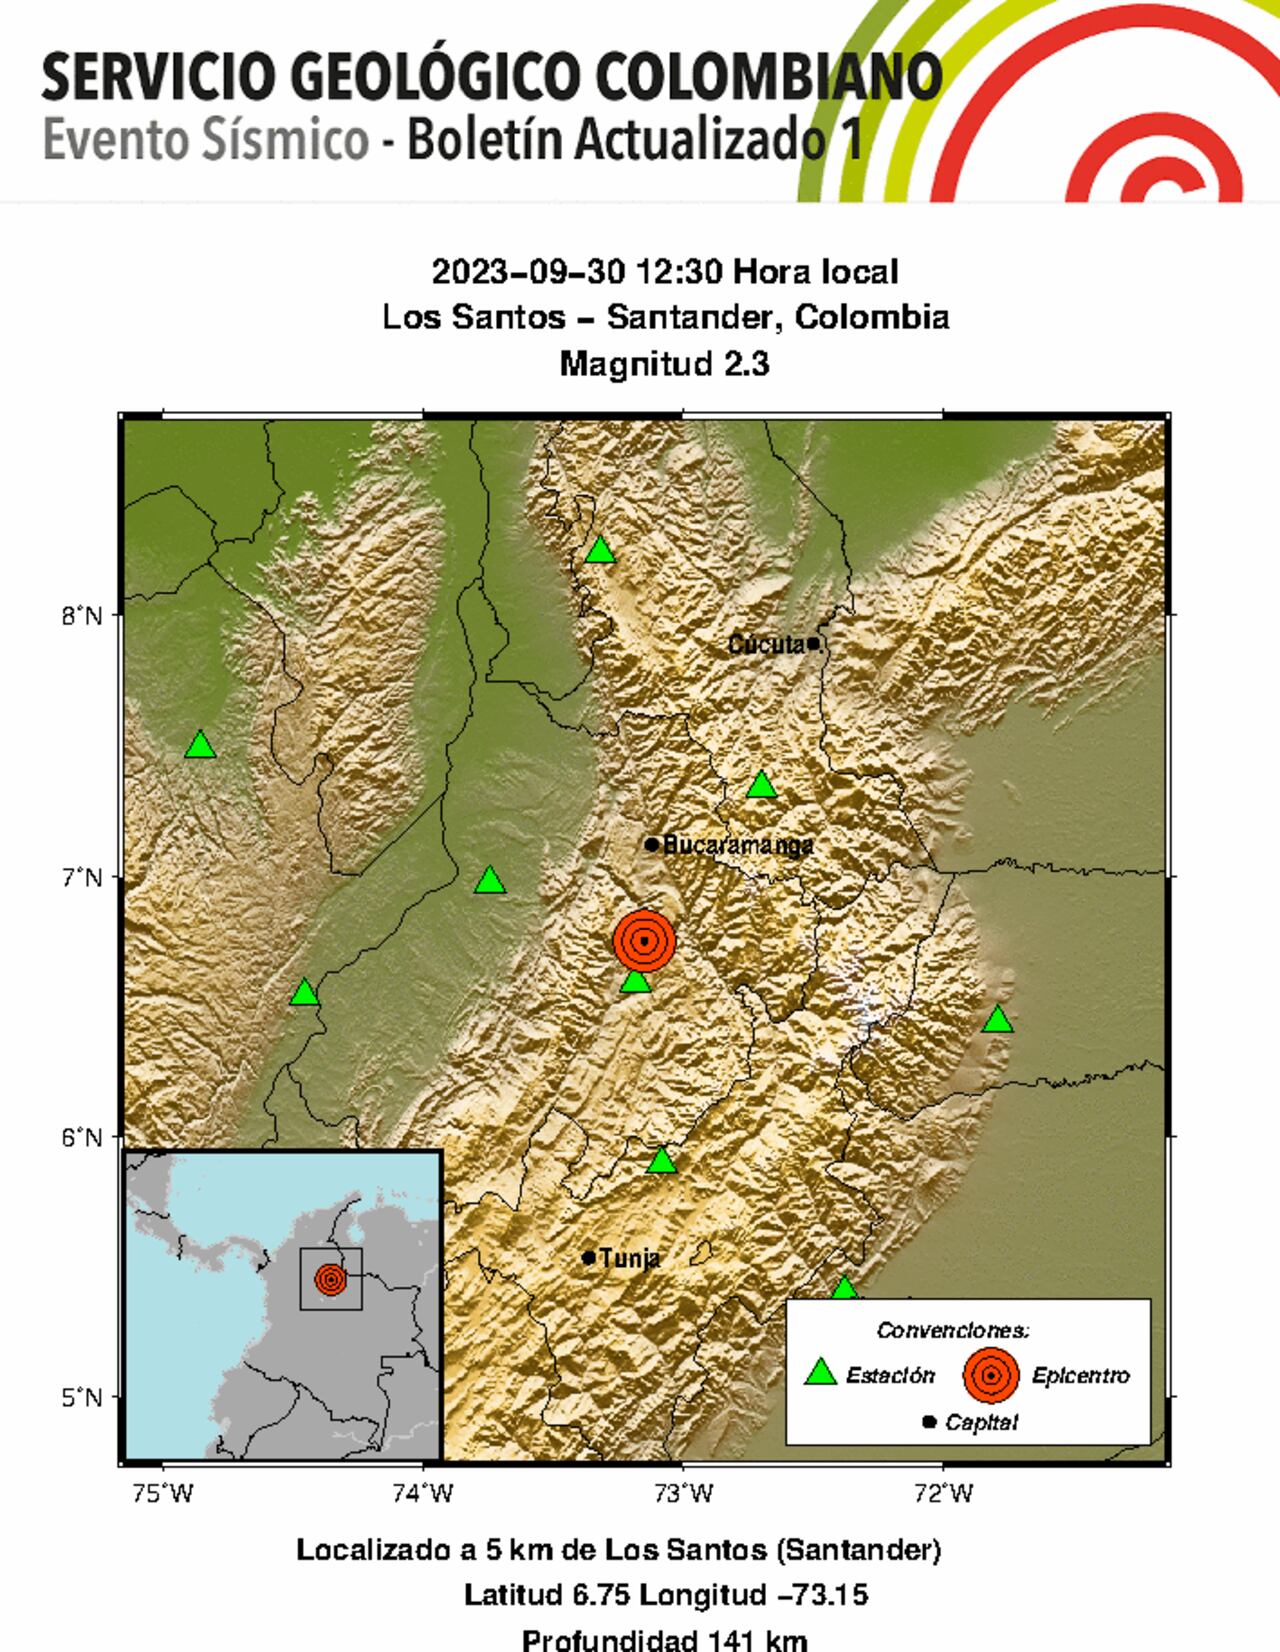 El último sismo reportado por el Servicio Geológico Colombiano fue reportado en Los Santos, Santander con una magnitud de 2.3